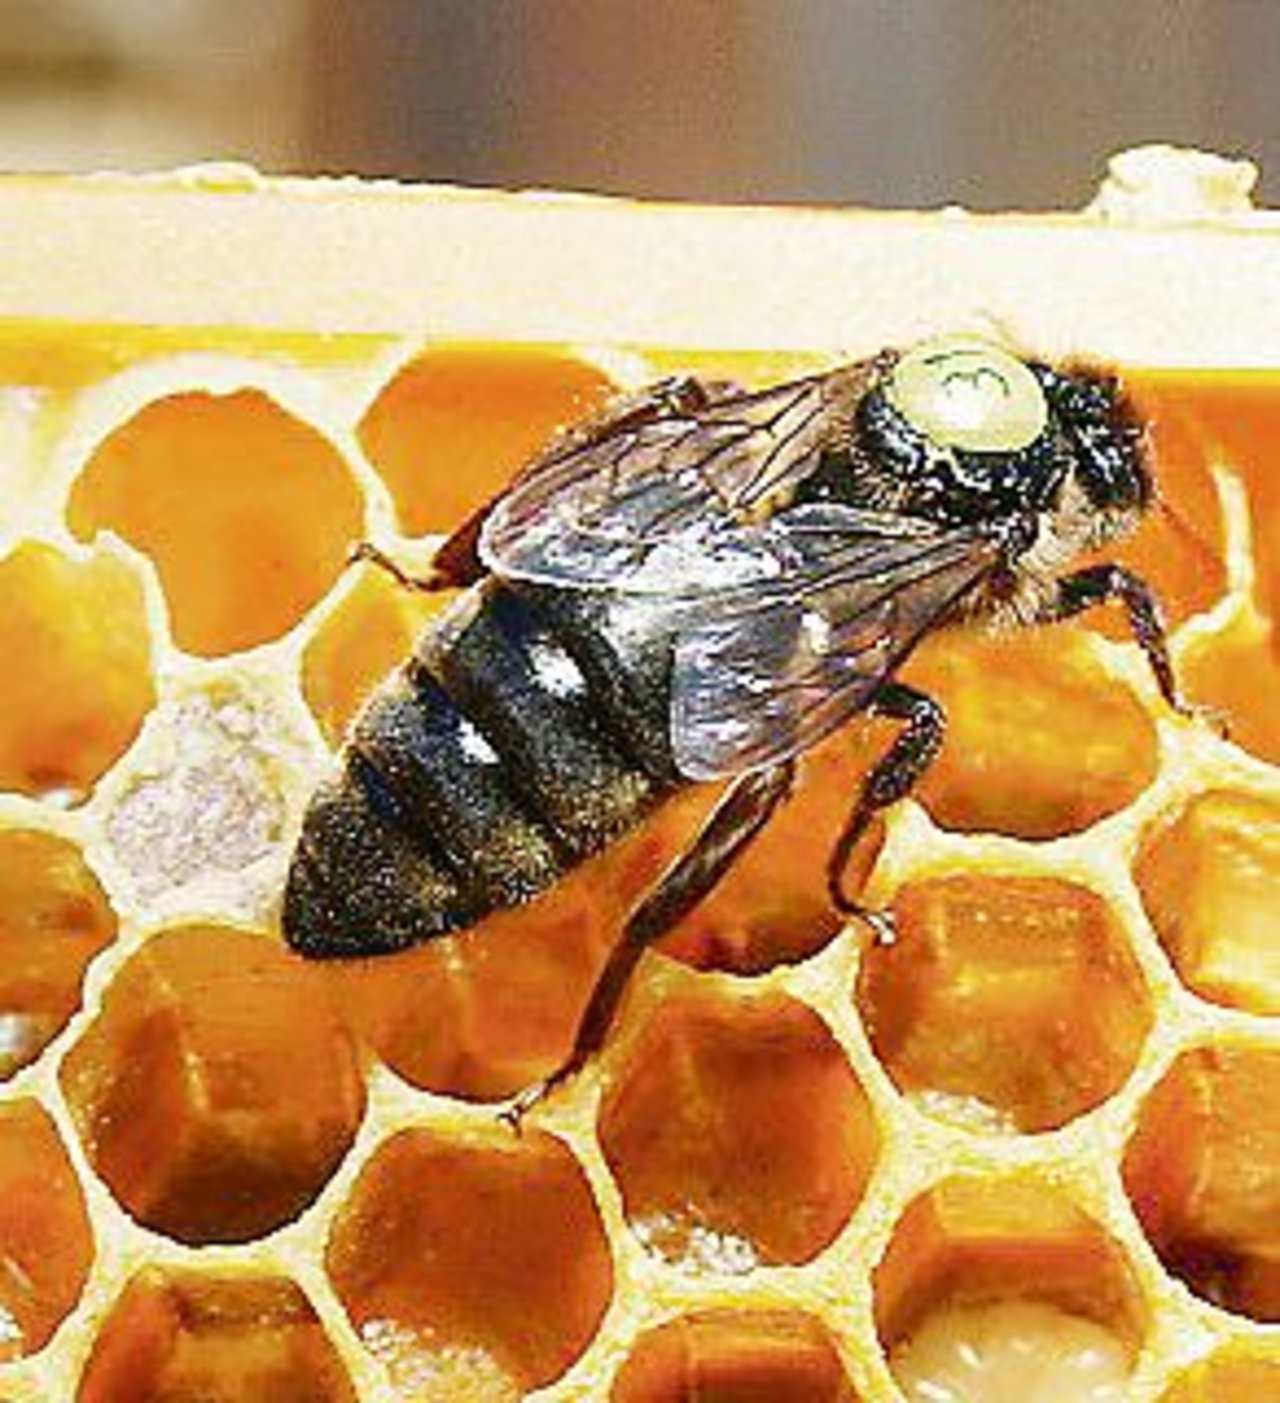 Rund um die Made hat sich ein Wachszapfen gebildet. Darin entwickelt sich die Bienenkönigin. (Bilder zVg)